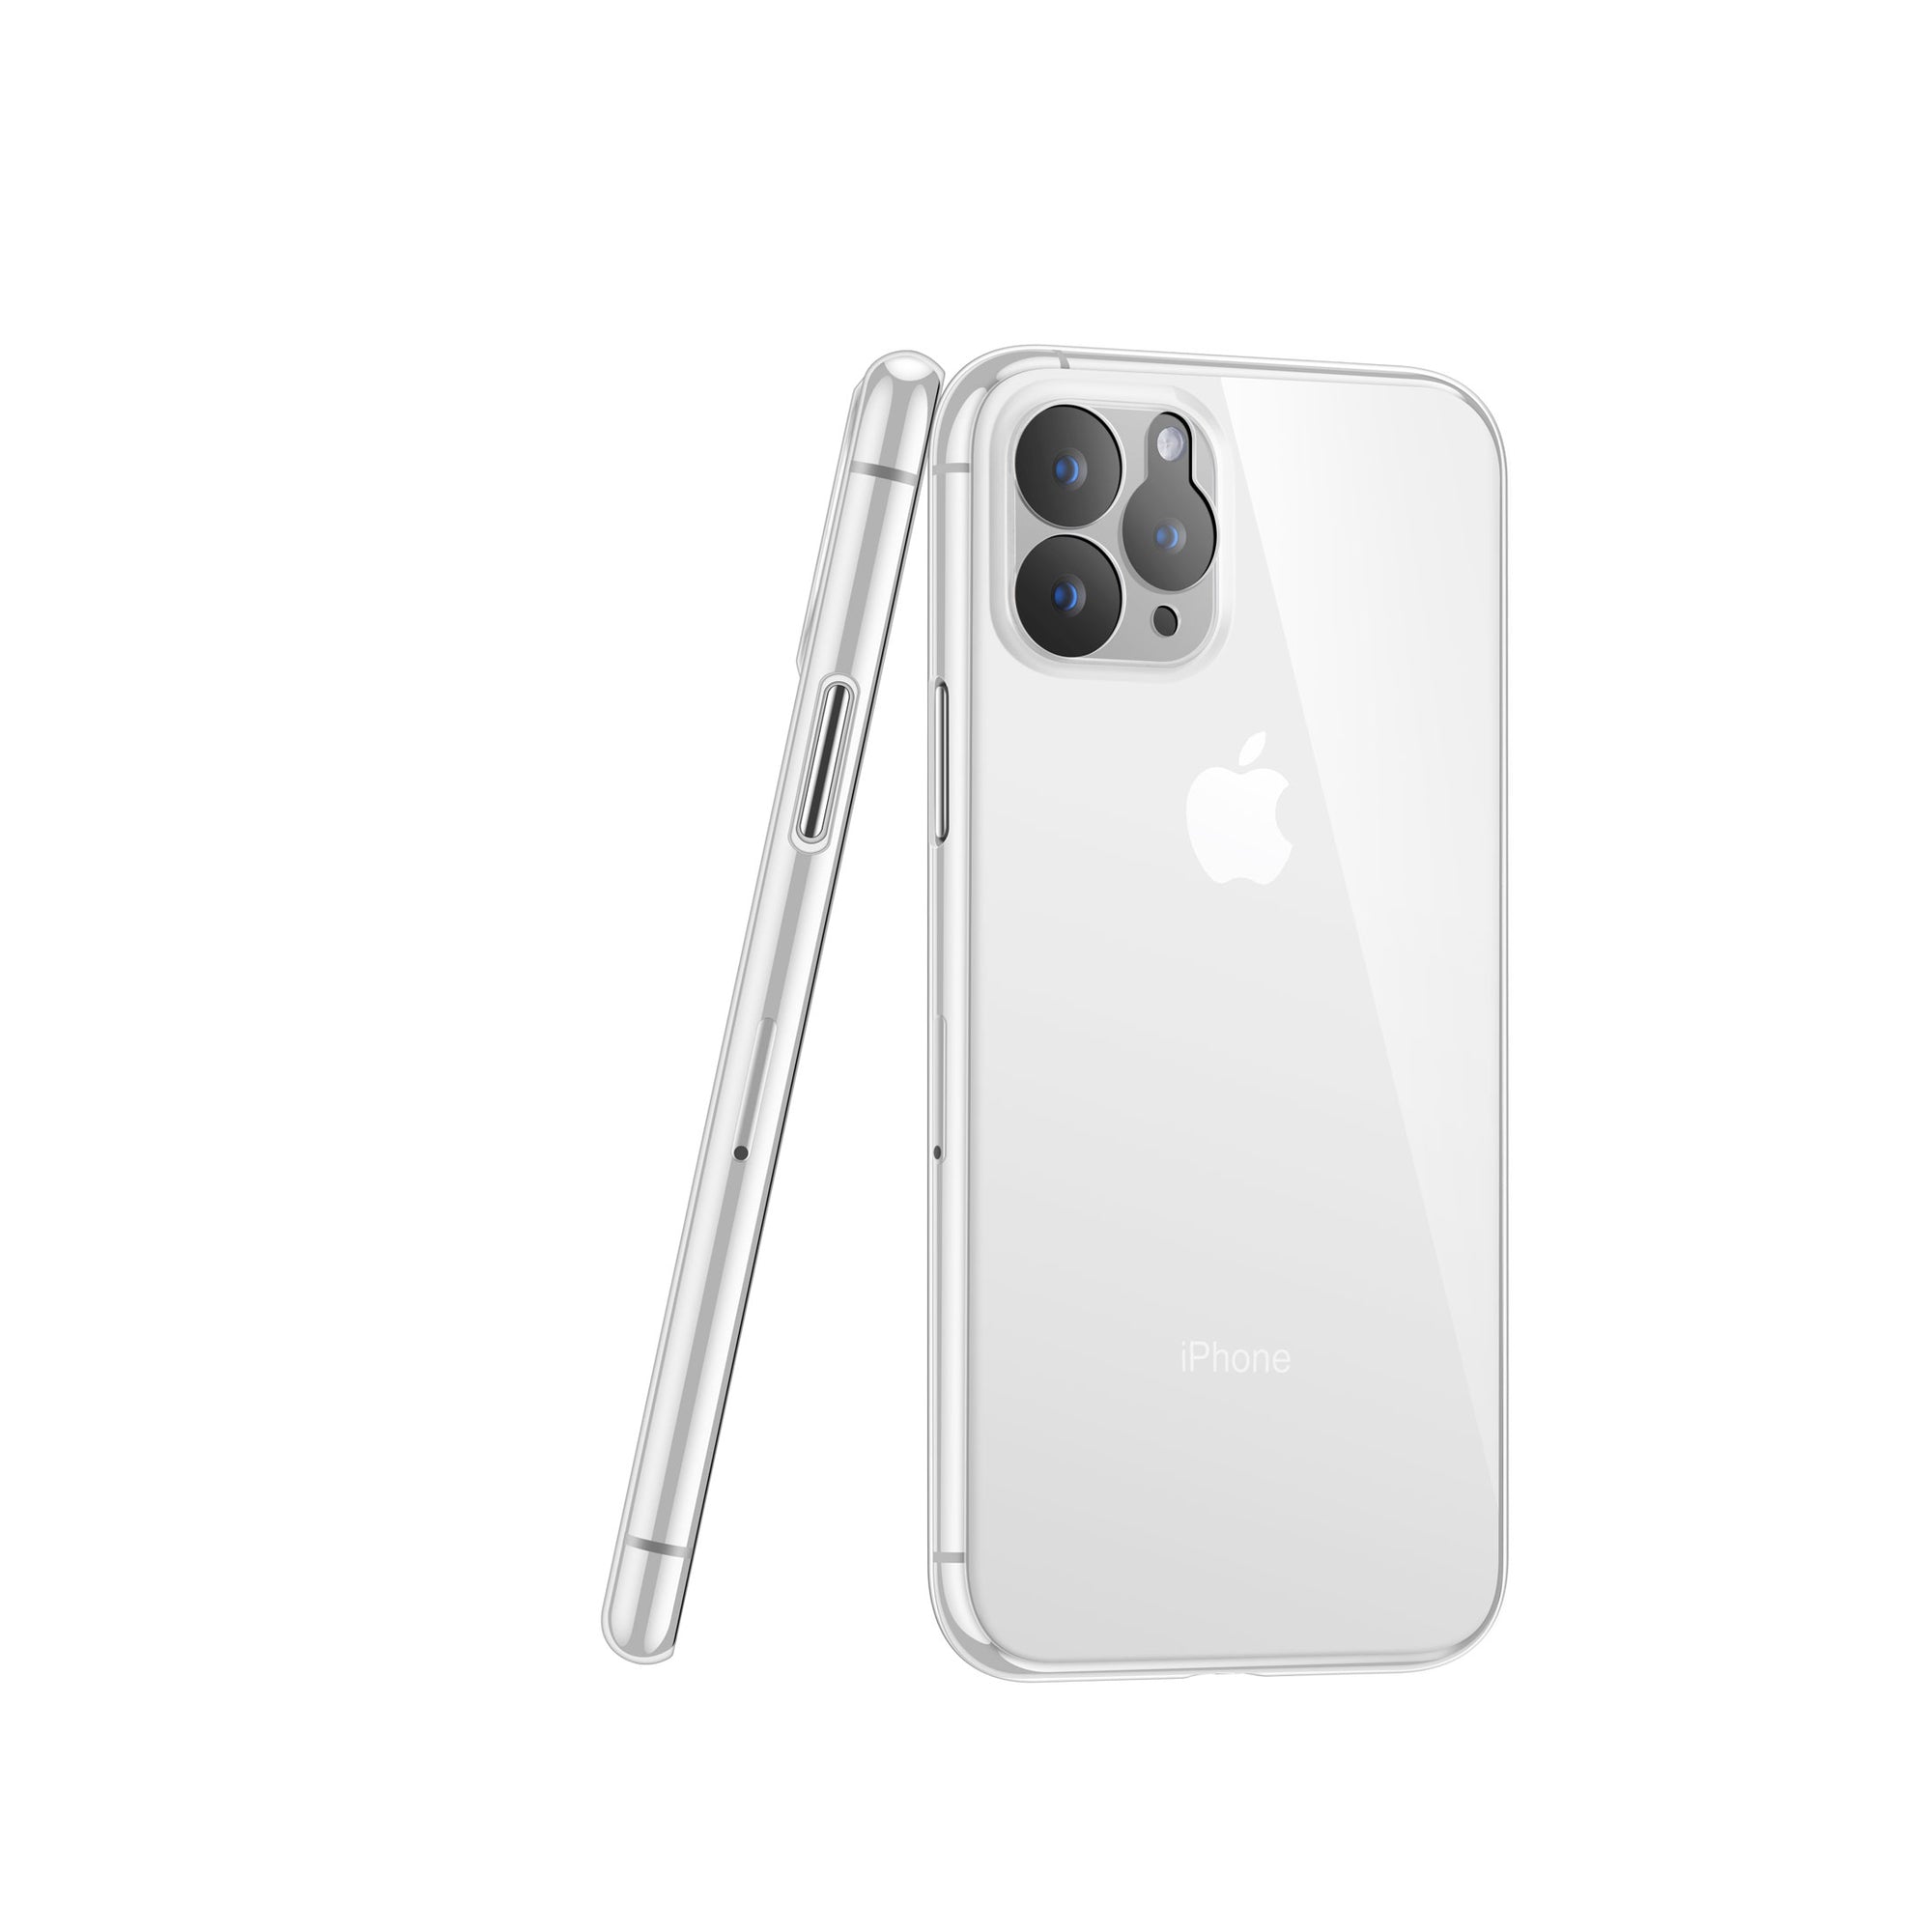 最新款苹果 iPhone 11 Pro 手机样机mockup素材下载[PSD]phone-11-pro-layered-psd-face ...